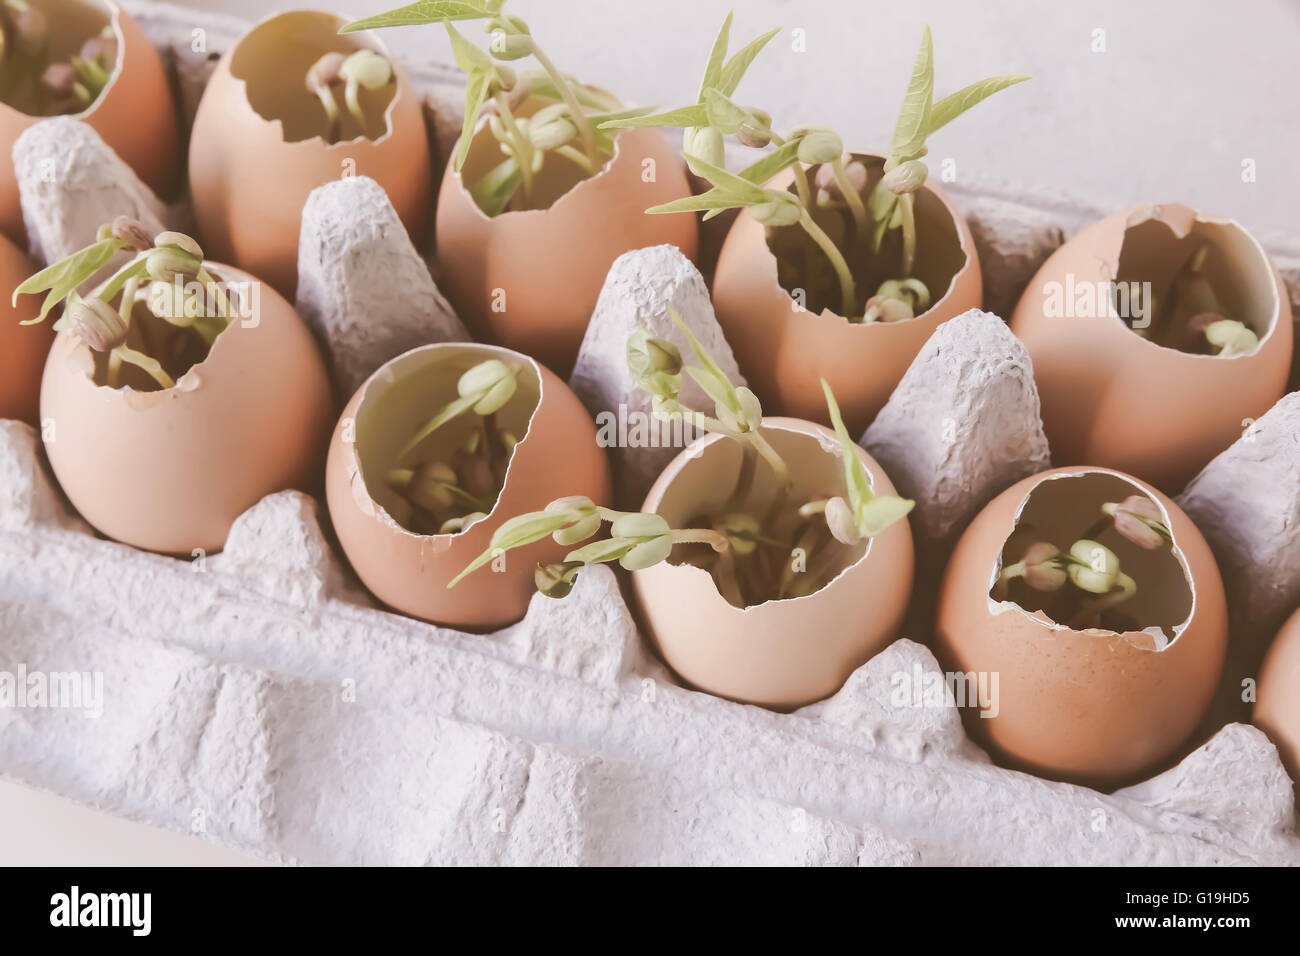 Les jeunes plantes en coquilles, eco concept Banque D'Images